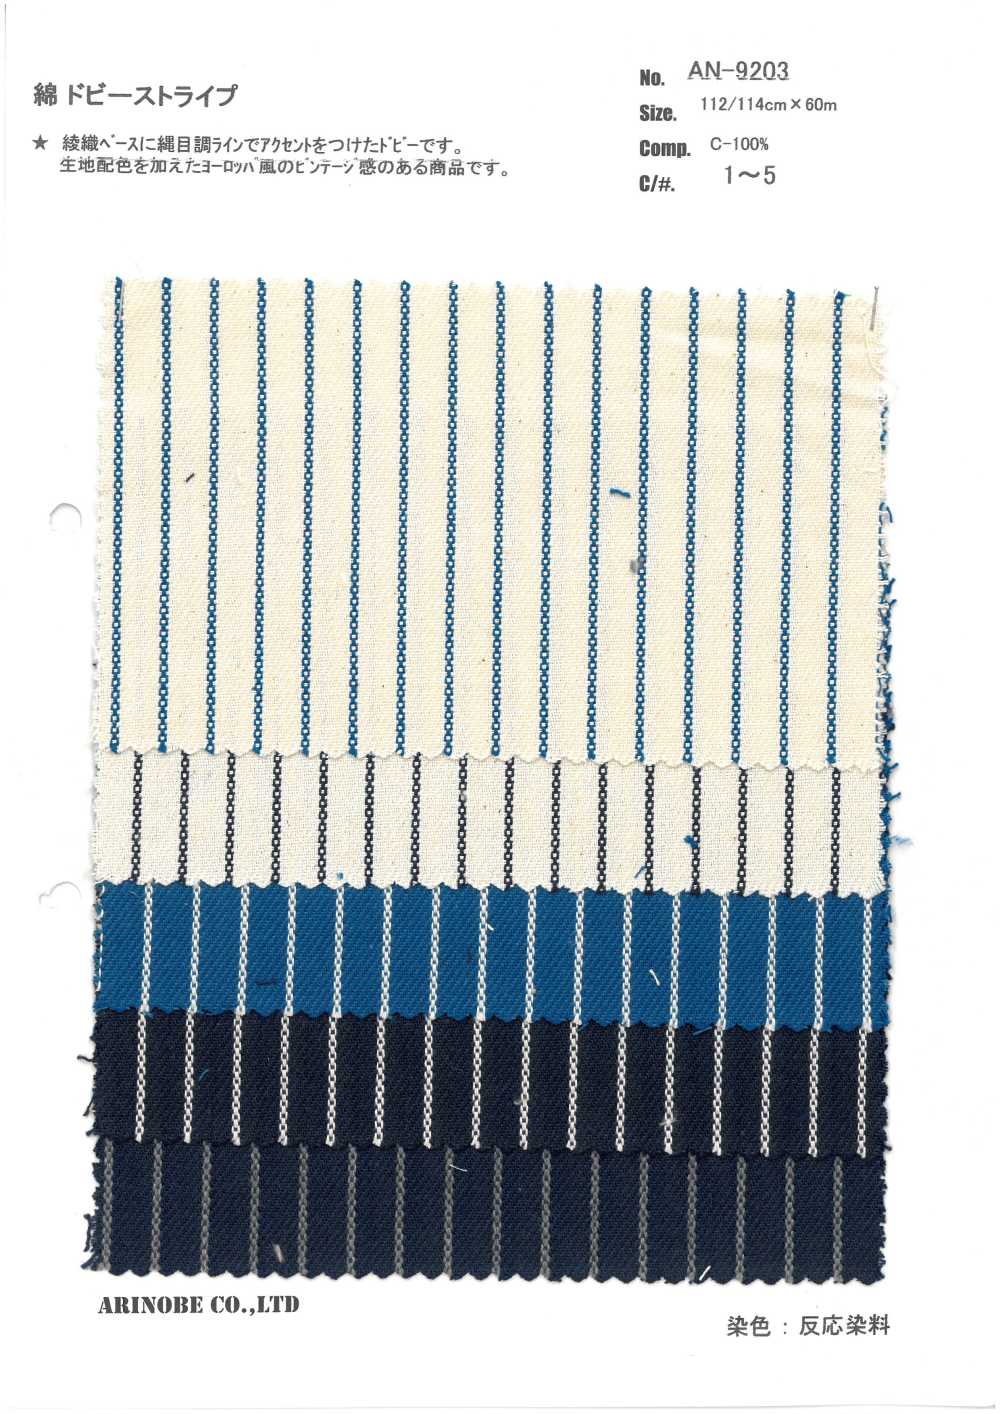 AN-9203 Cotton Dobby Stripes[Textile / Fabric] ARINOBE CO., LTD.